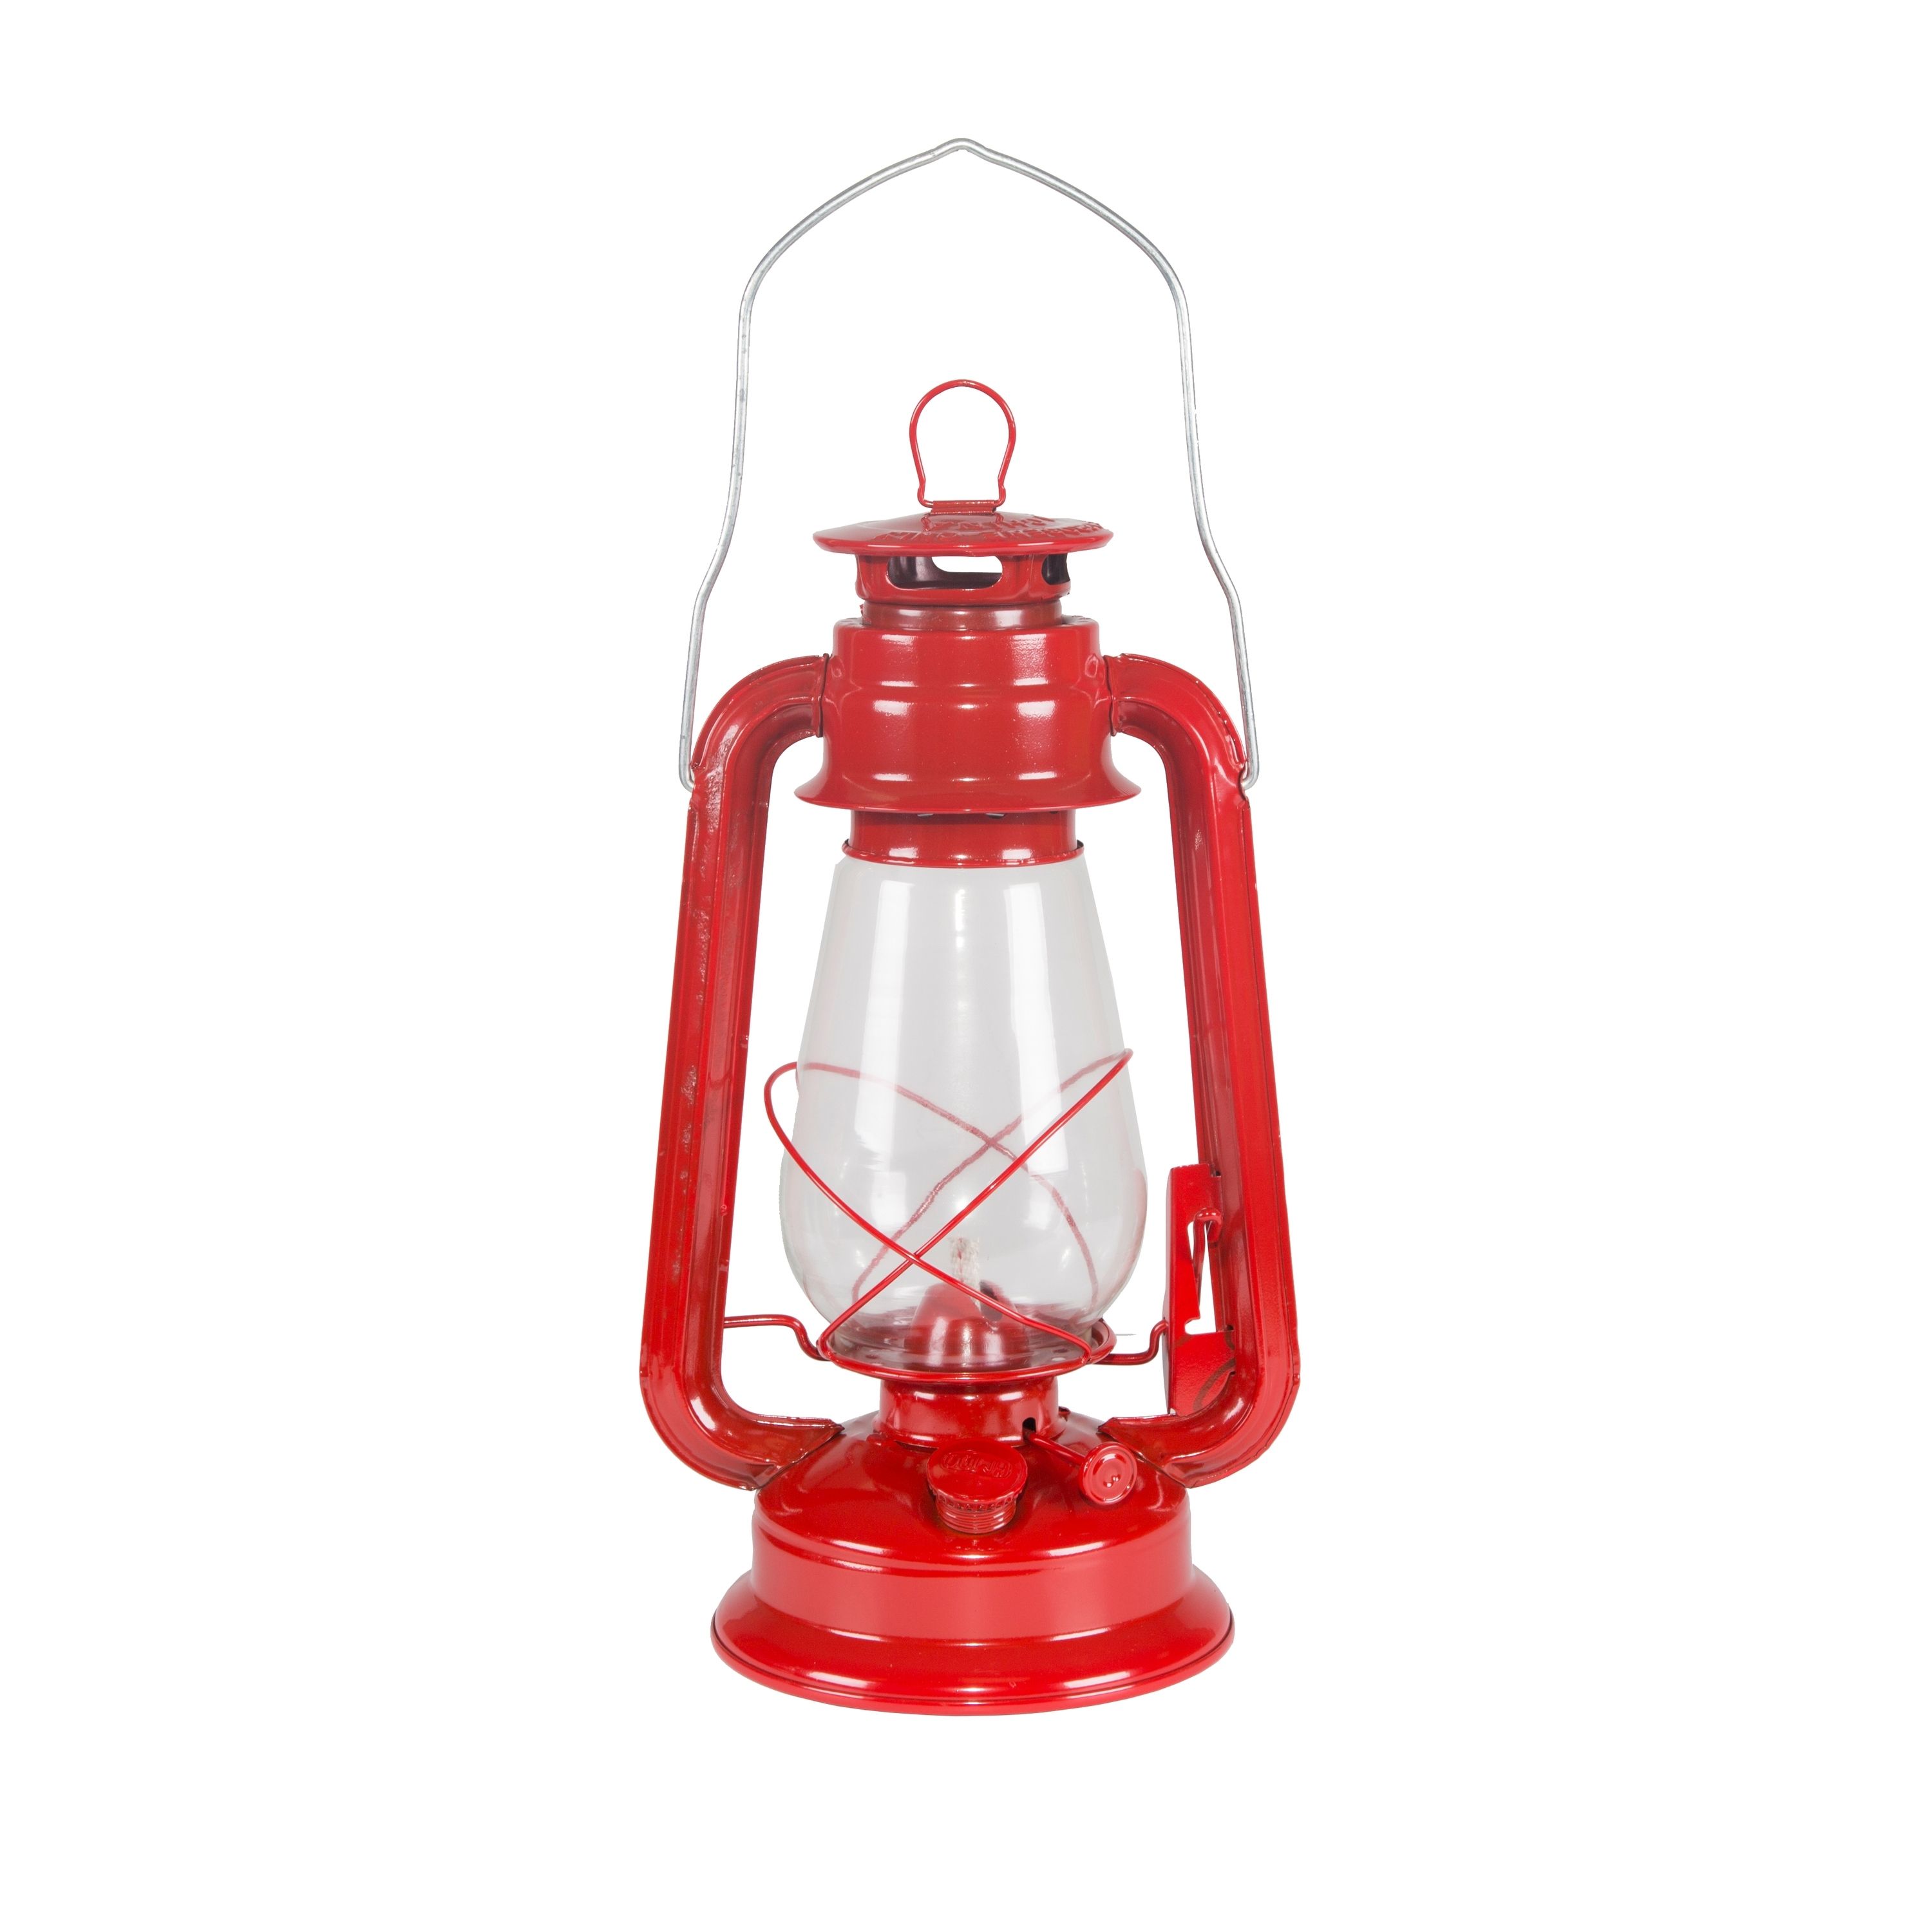 Stansport Kerosene Lantern – 12" – Walmart With Outdoor Kerosene Lanterns (View 3 of 20)